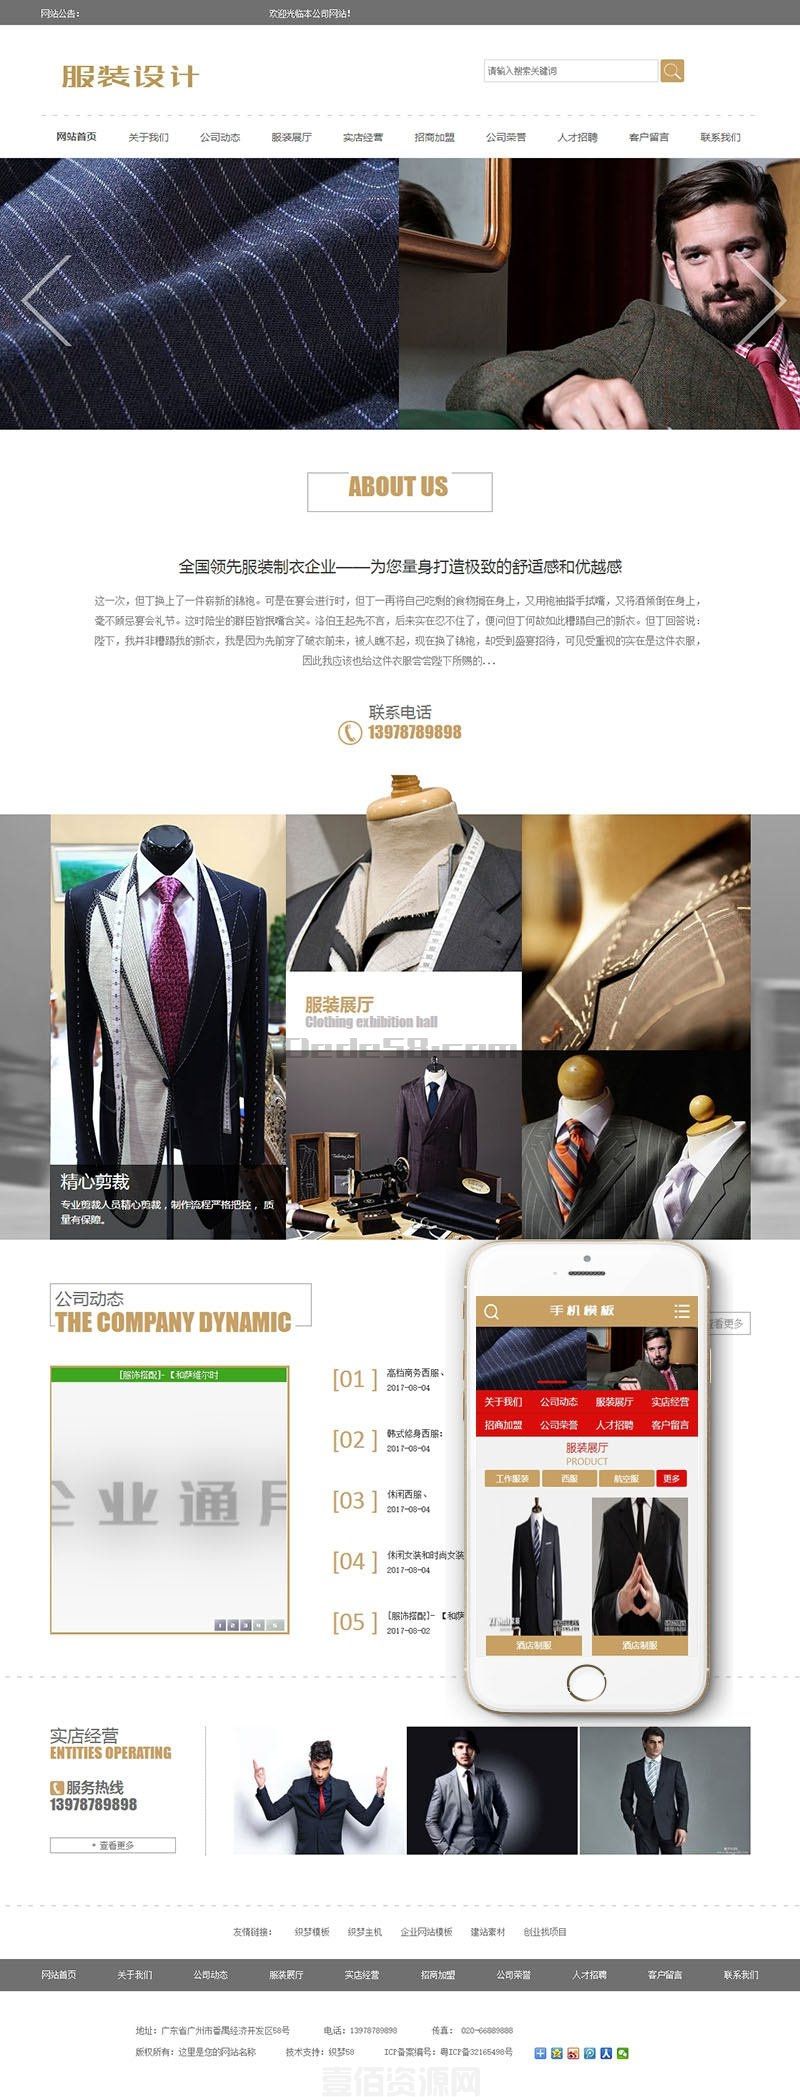 服装设计展示企业网站源码 dedecms织梦模板 (带手机端)(图1)